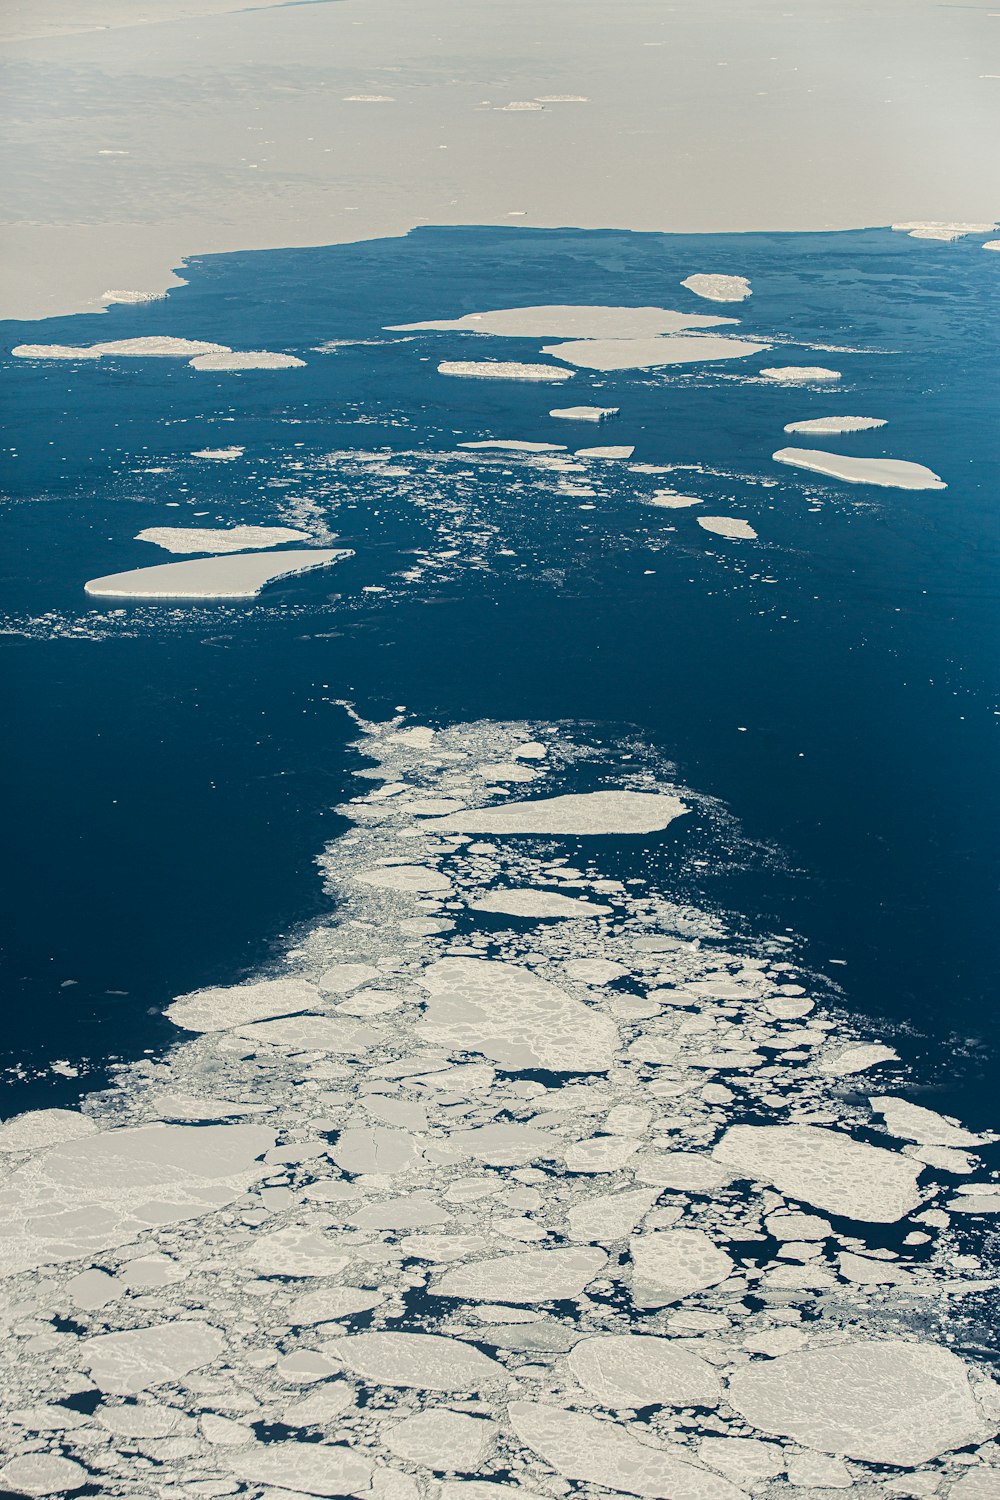 Una veduta aerea dei banchi di ghiaccio nell'oceano